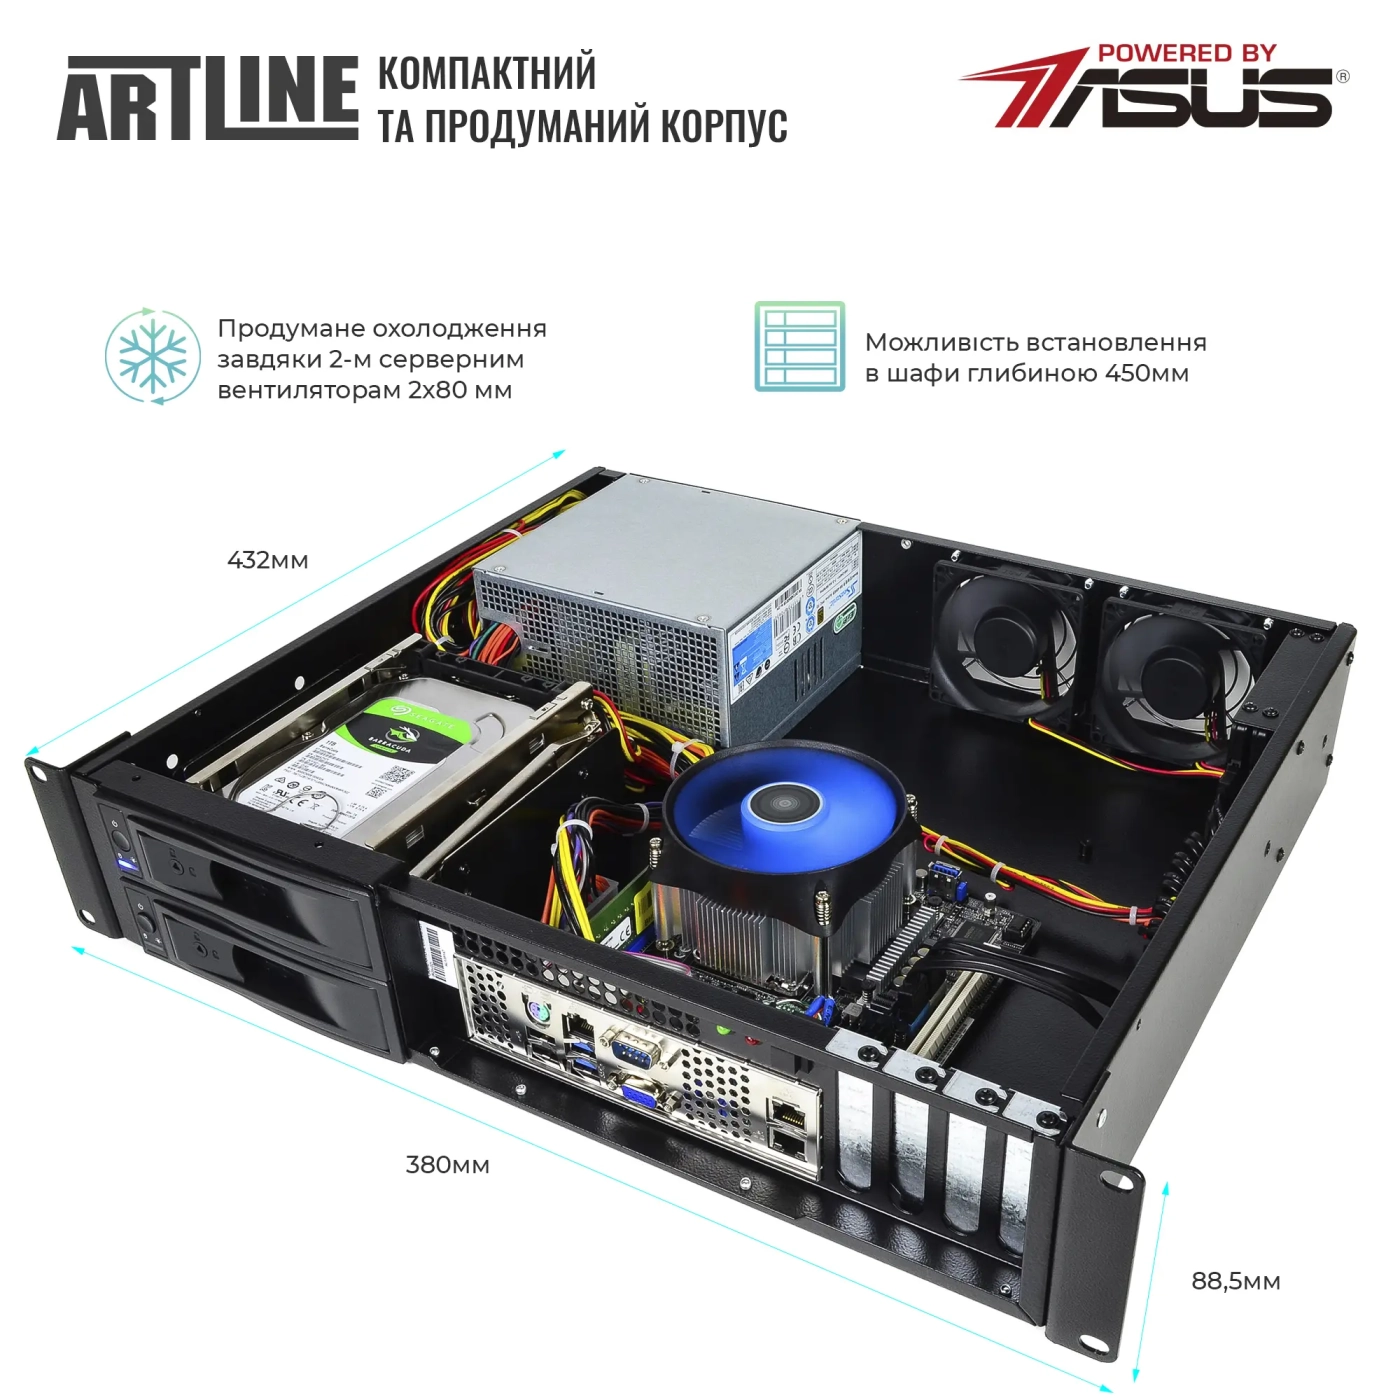 Купить Сервер ARTLINE Business R35 (R35v56) - фото 3